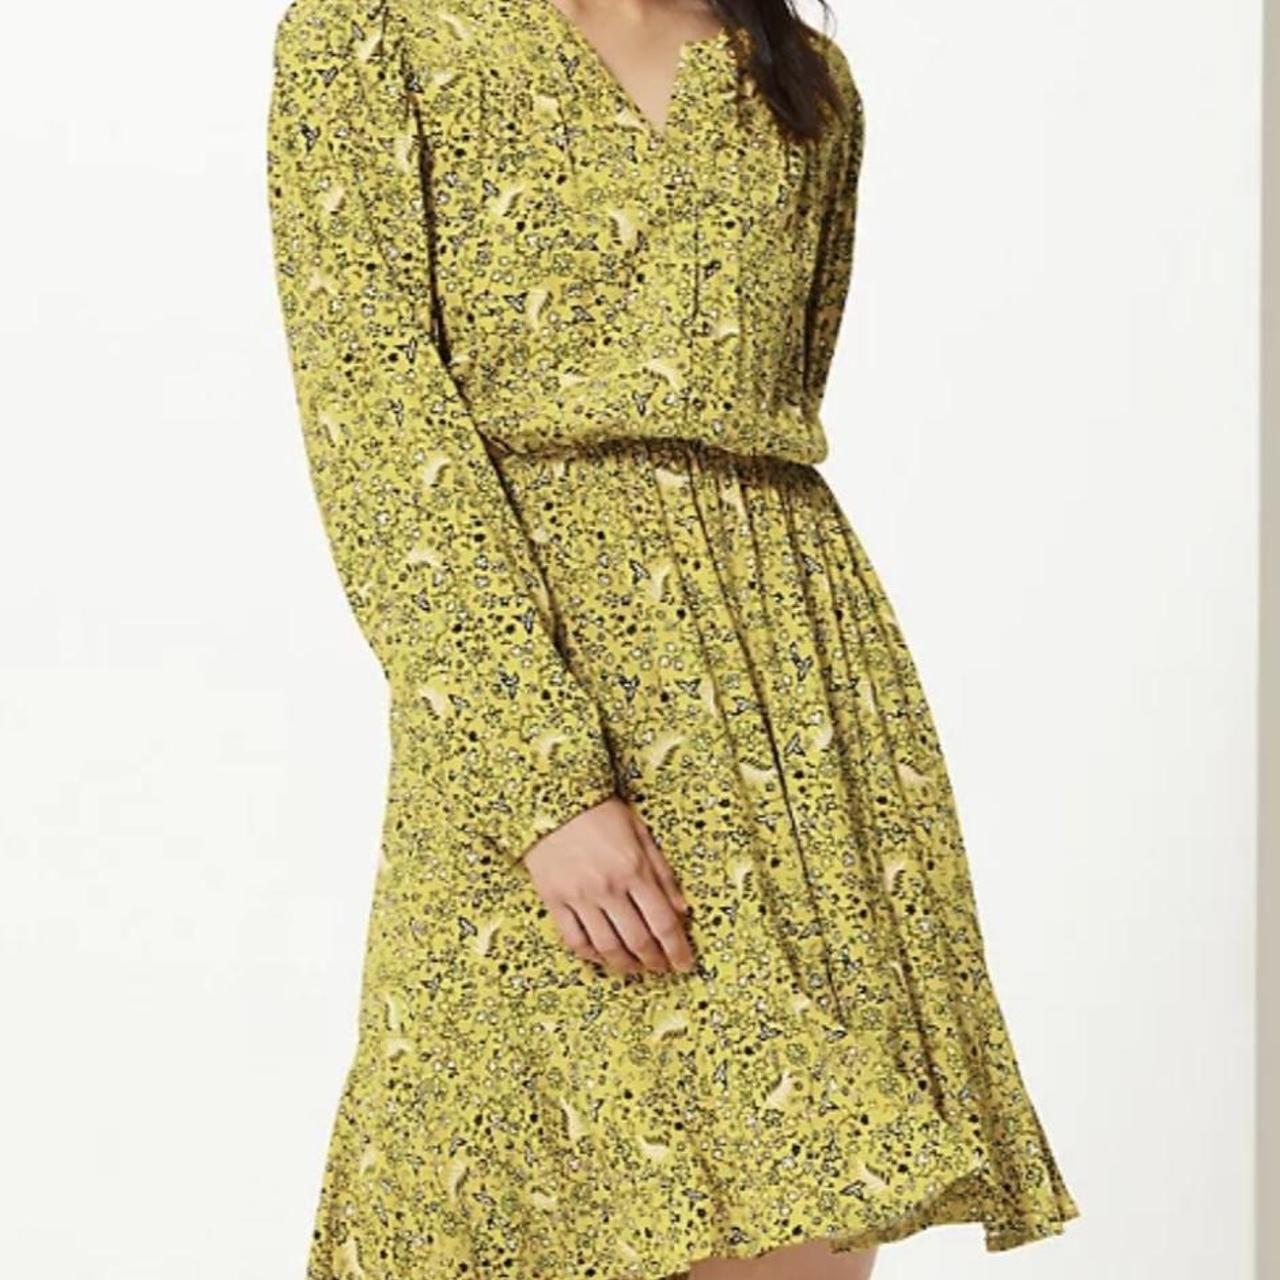 Marks & Spencer Women's Yellow Dress | Depop